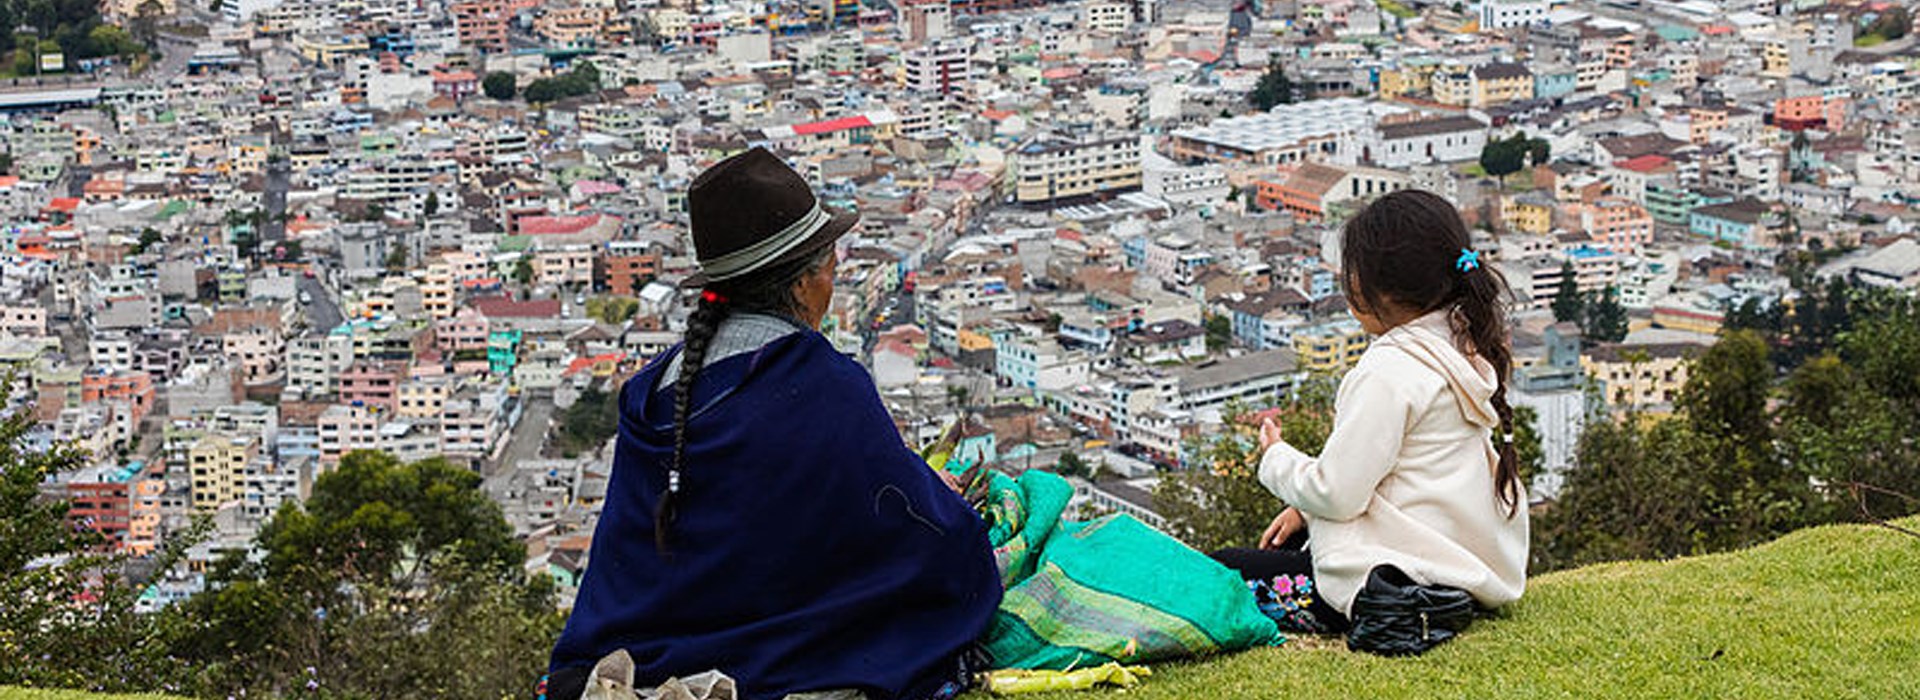 Visiter Quito - Equateur